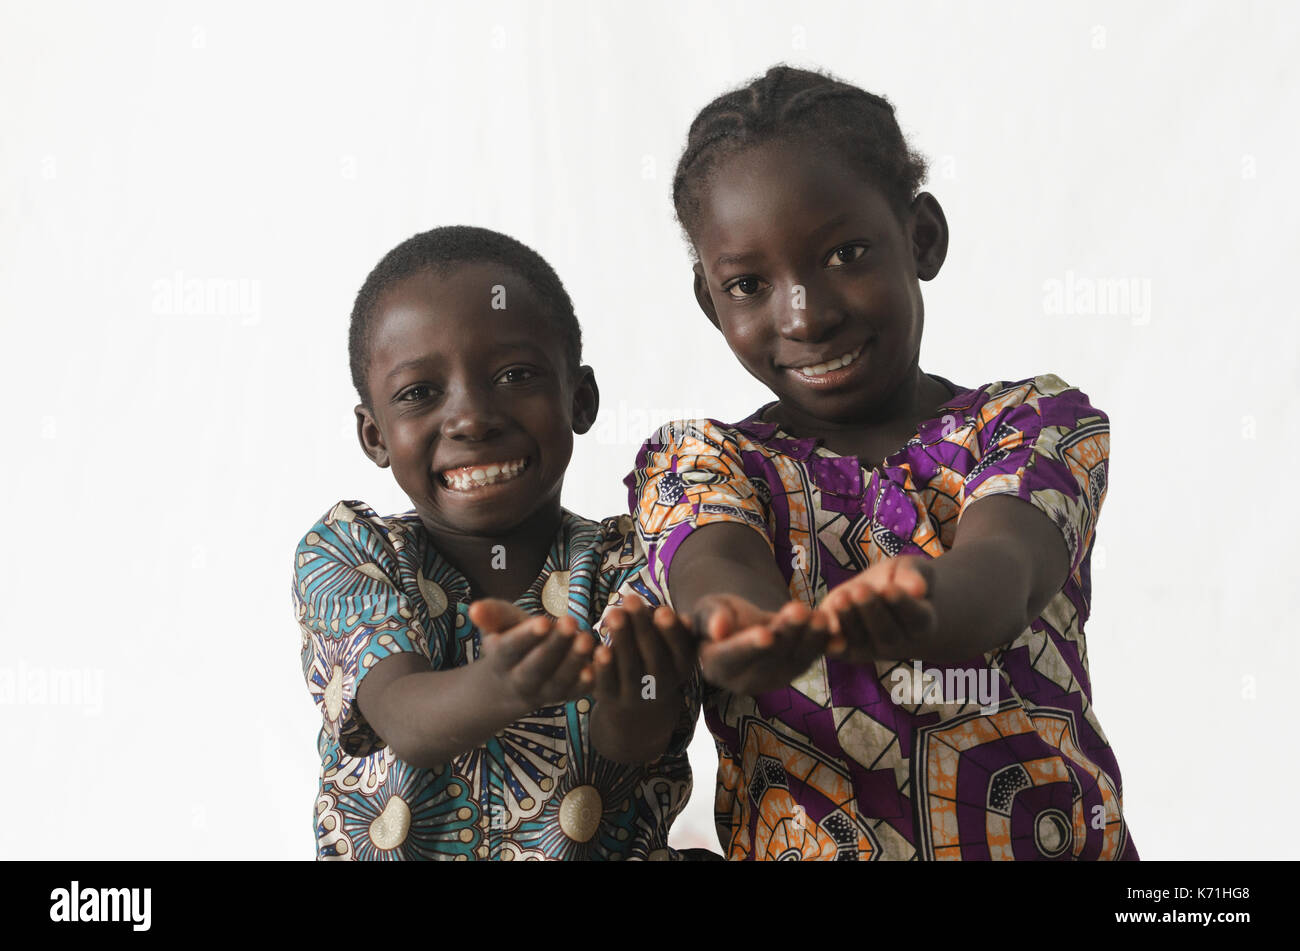 Deux enfants africains montrant leurs paumes la mendicité pour demander quelque chose, tout en souriant, isolated on white Banque D'Images